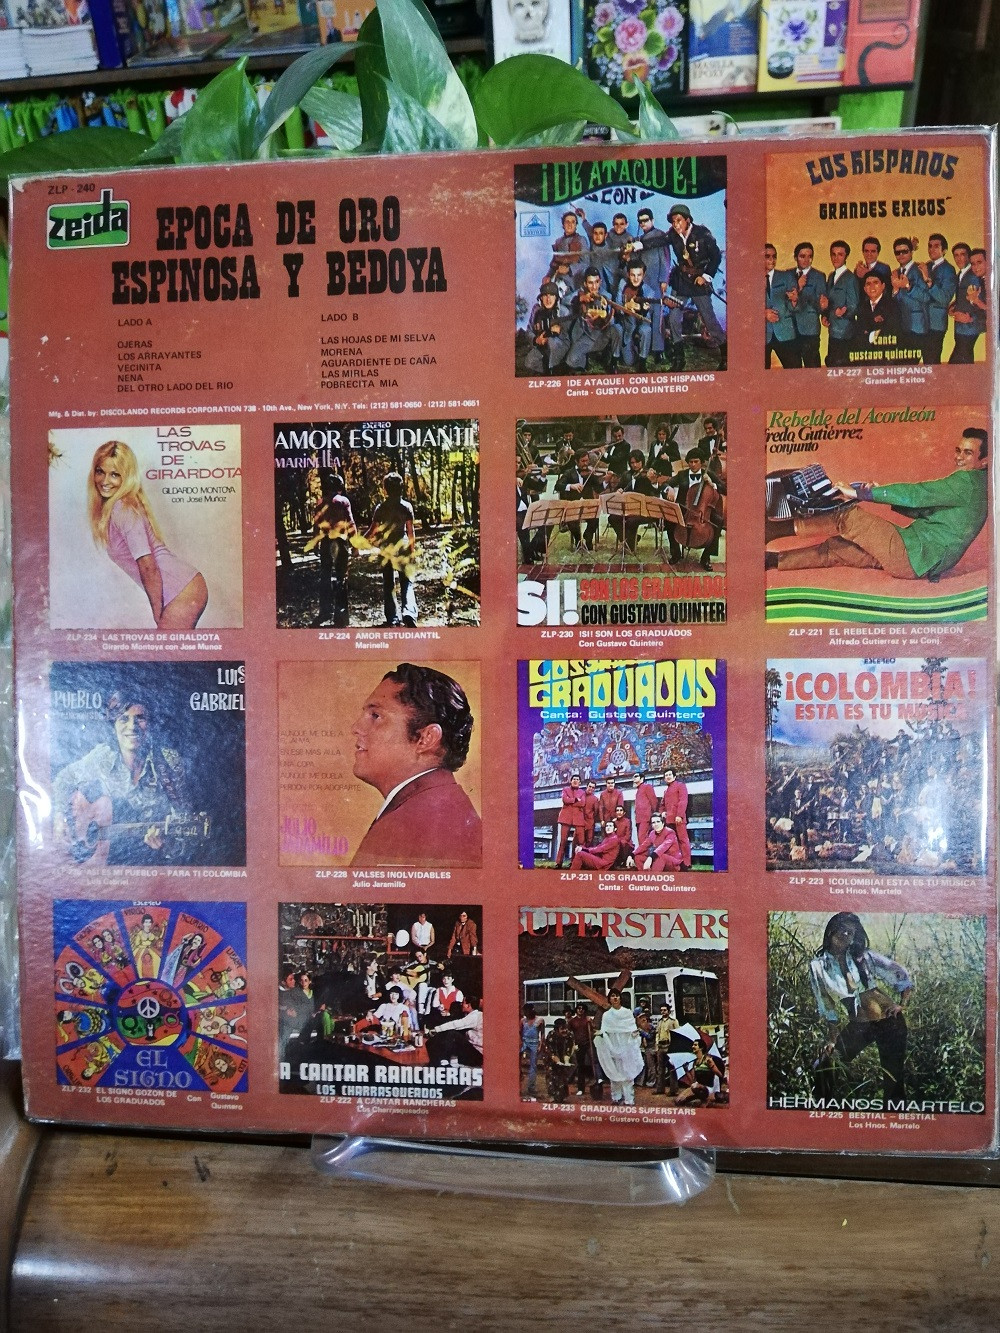 Imagen LP ESPINOSA Y BEDOYA - EPOCA DE ORO 2